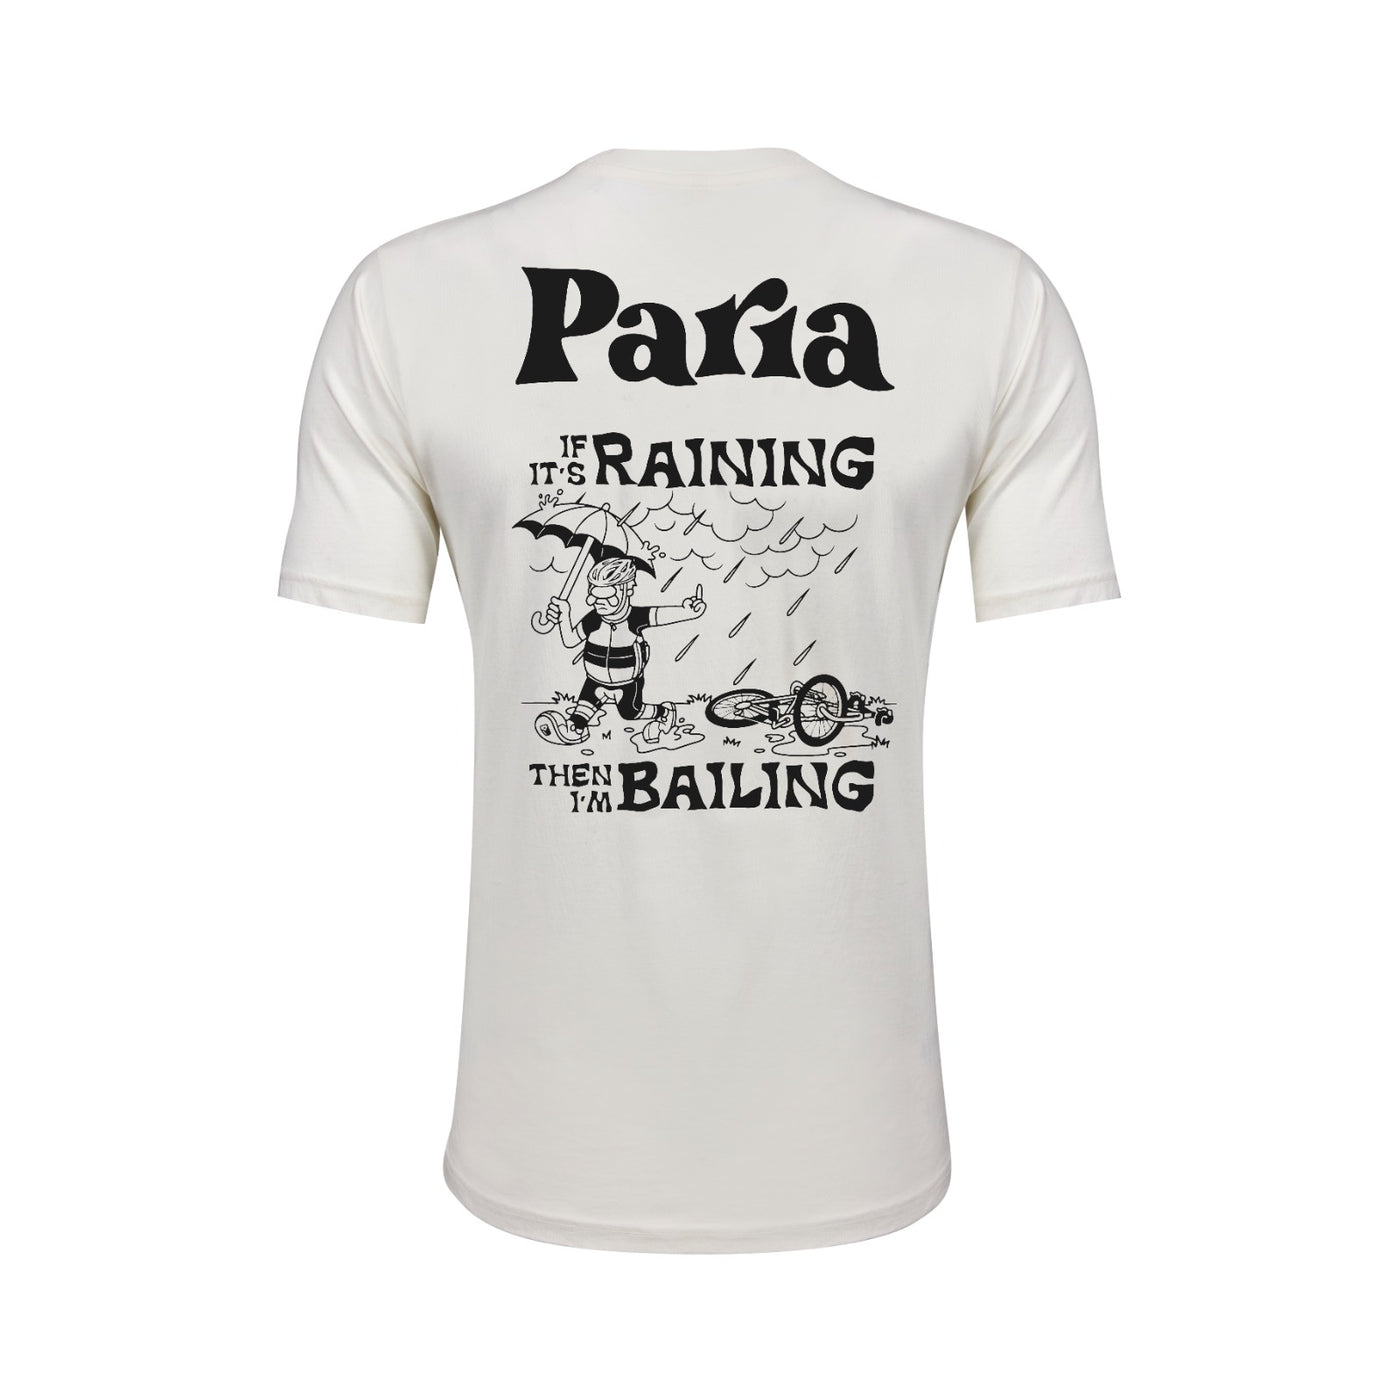 If it's Raining, i'm Bailing // White T-shirt